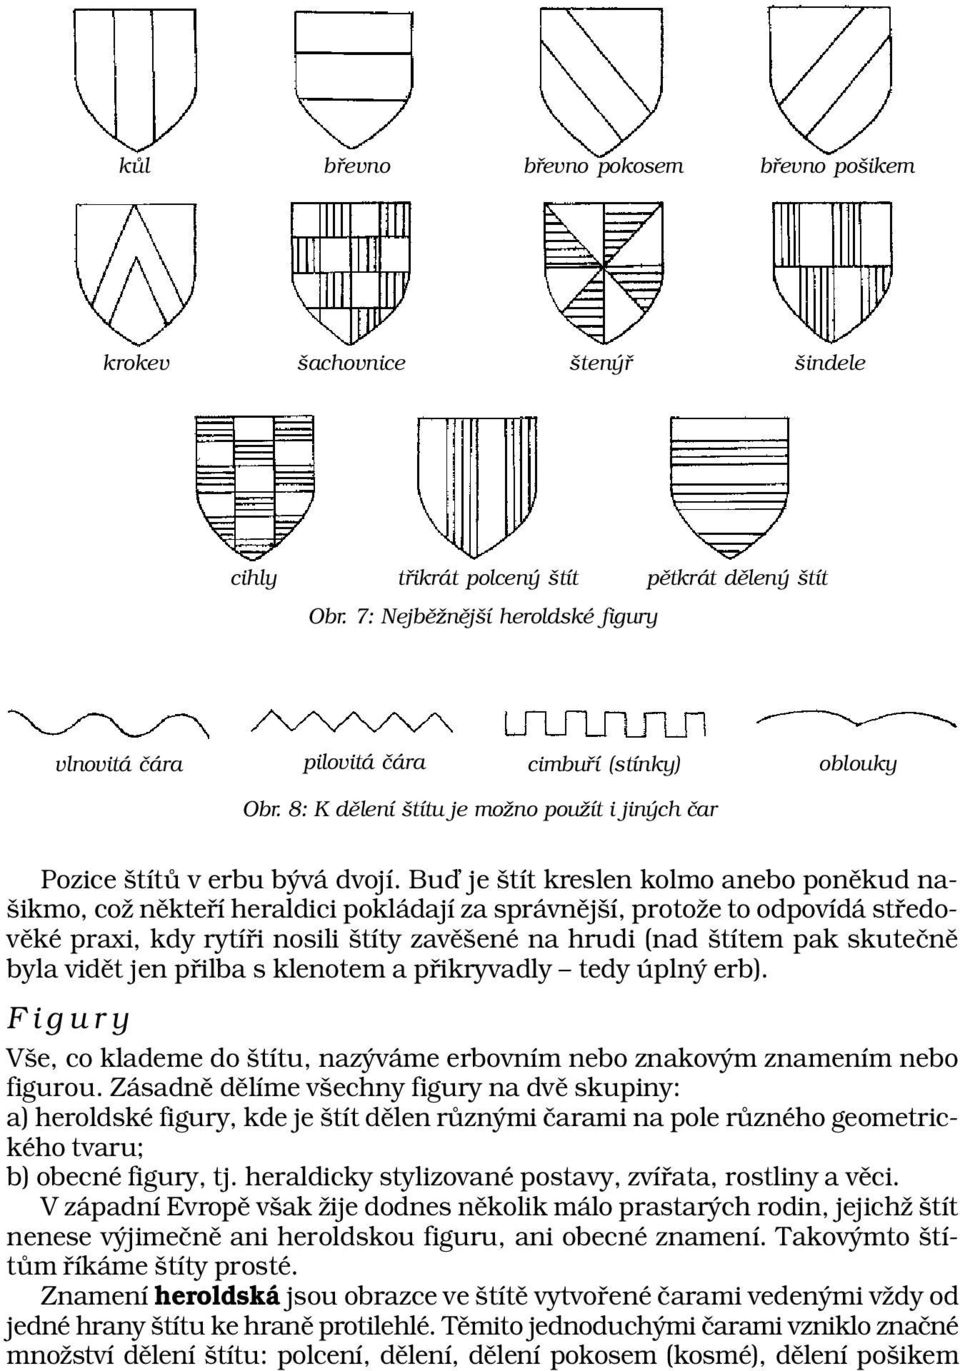 Buď je štít kreslen kolmo anebo poněkud našikmo, což někteří heraldici pokládají za správnější, protože to odpovídá středověké praxi, kdy rytíři nosili štíty zavěšené na hrudi (nad štítem pak